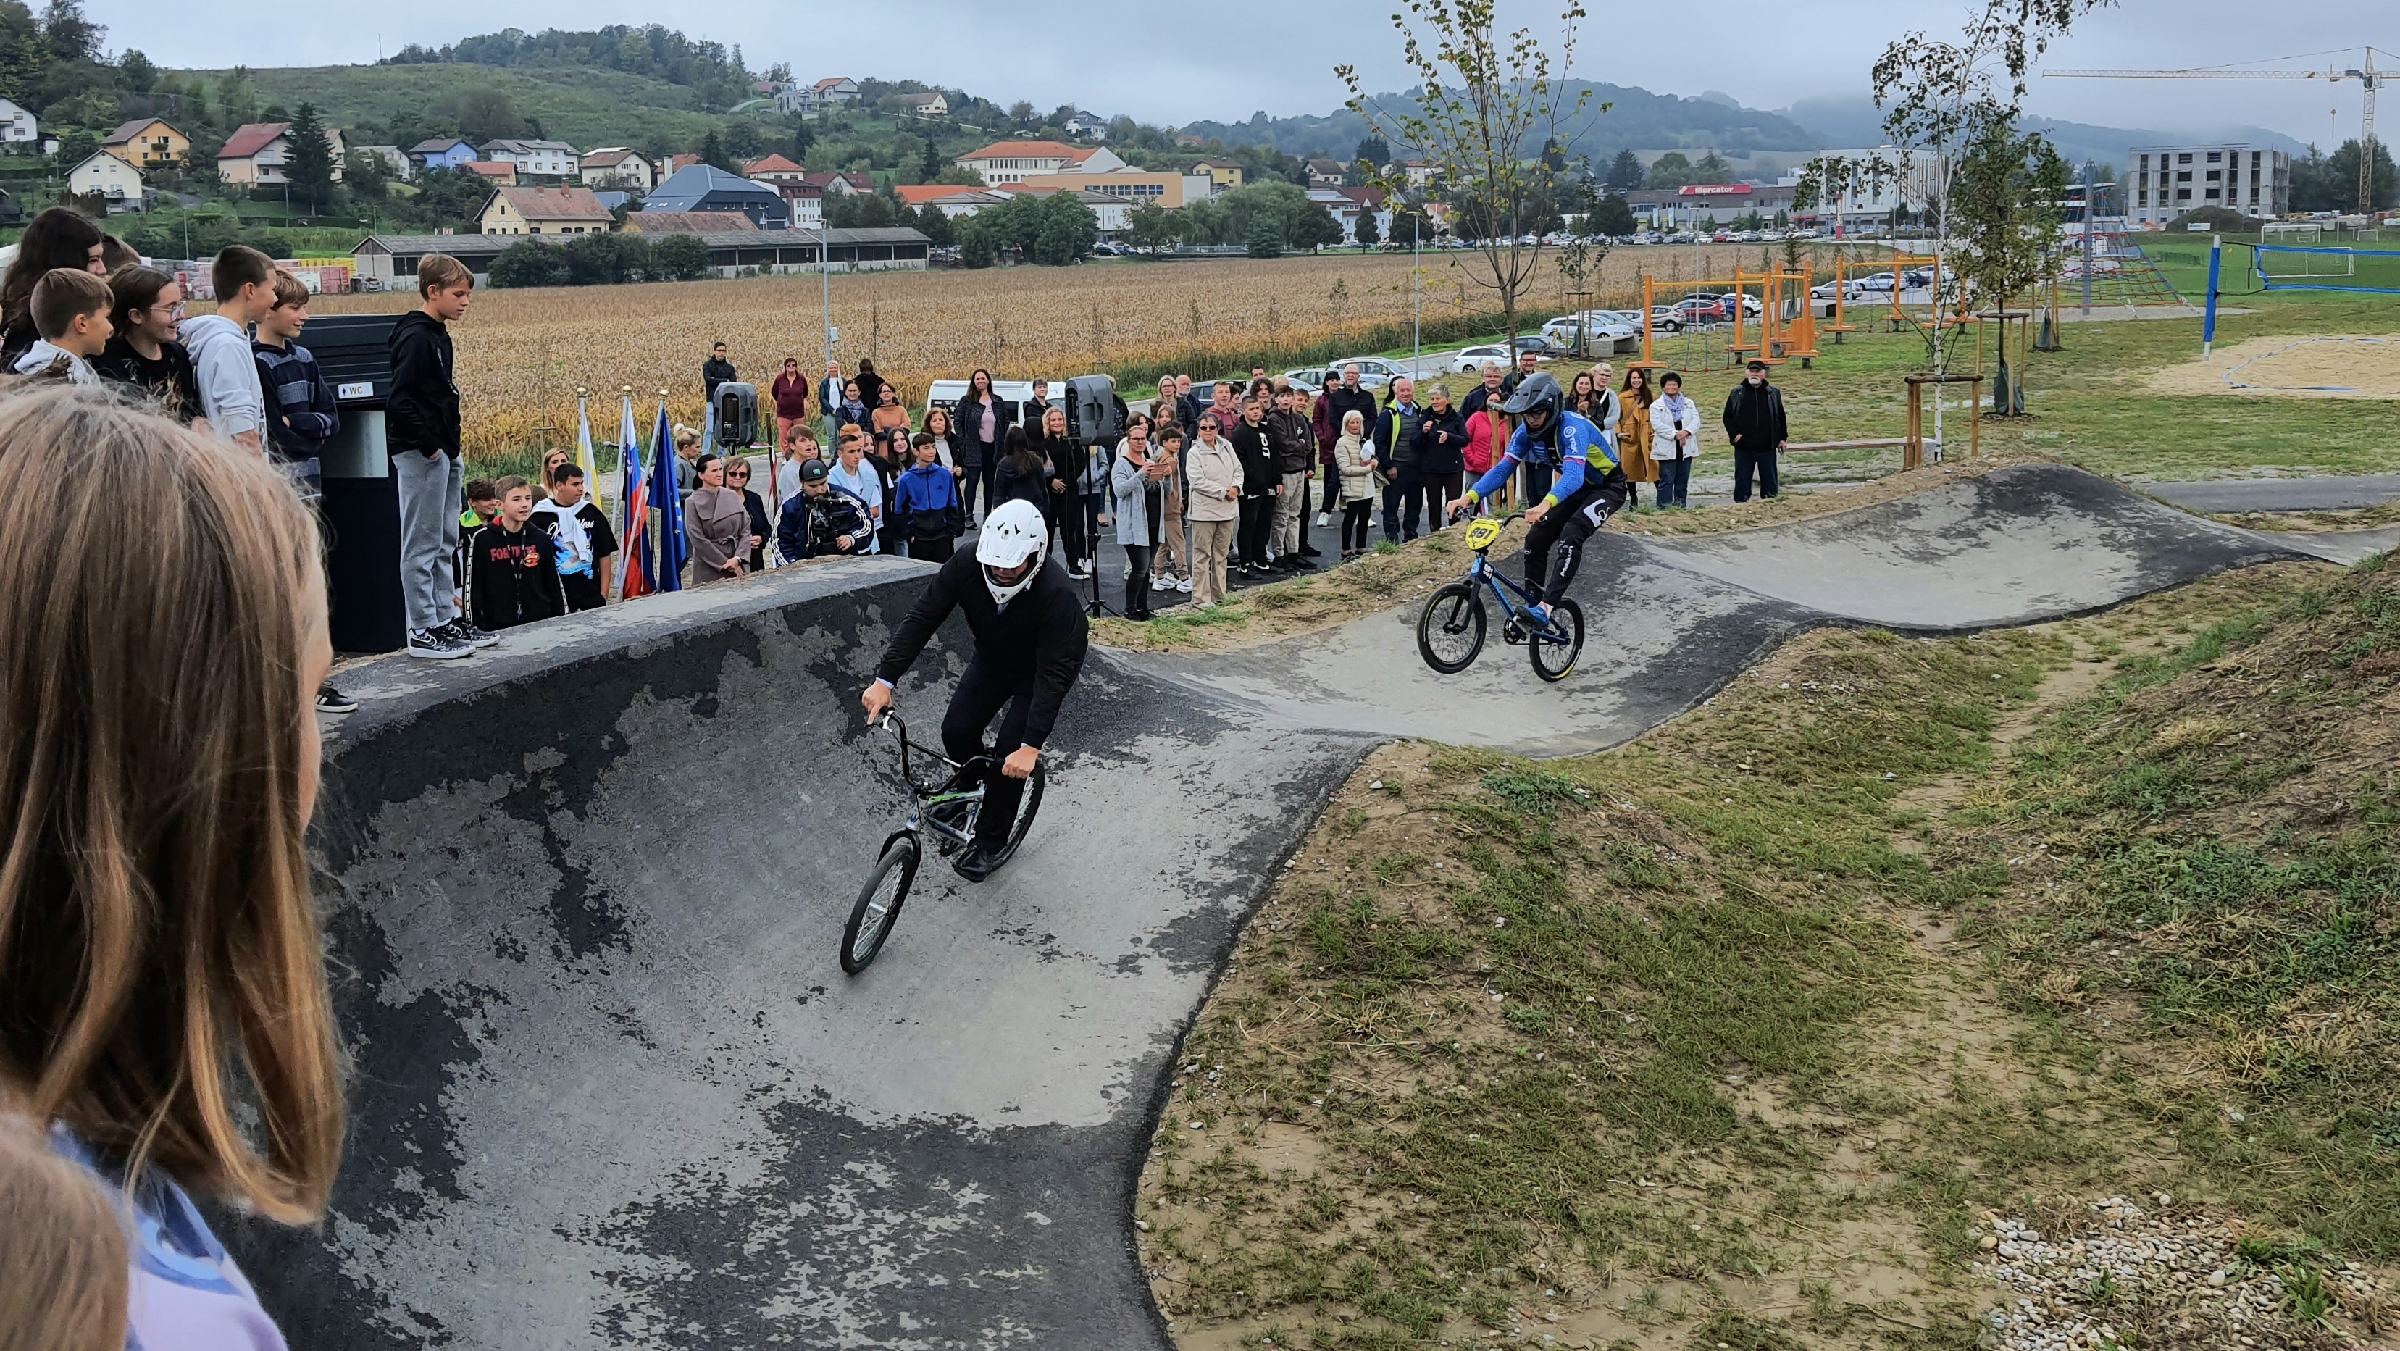 FOTO: V Pesnici odprli največji pumptrack poligon v Sloveniji